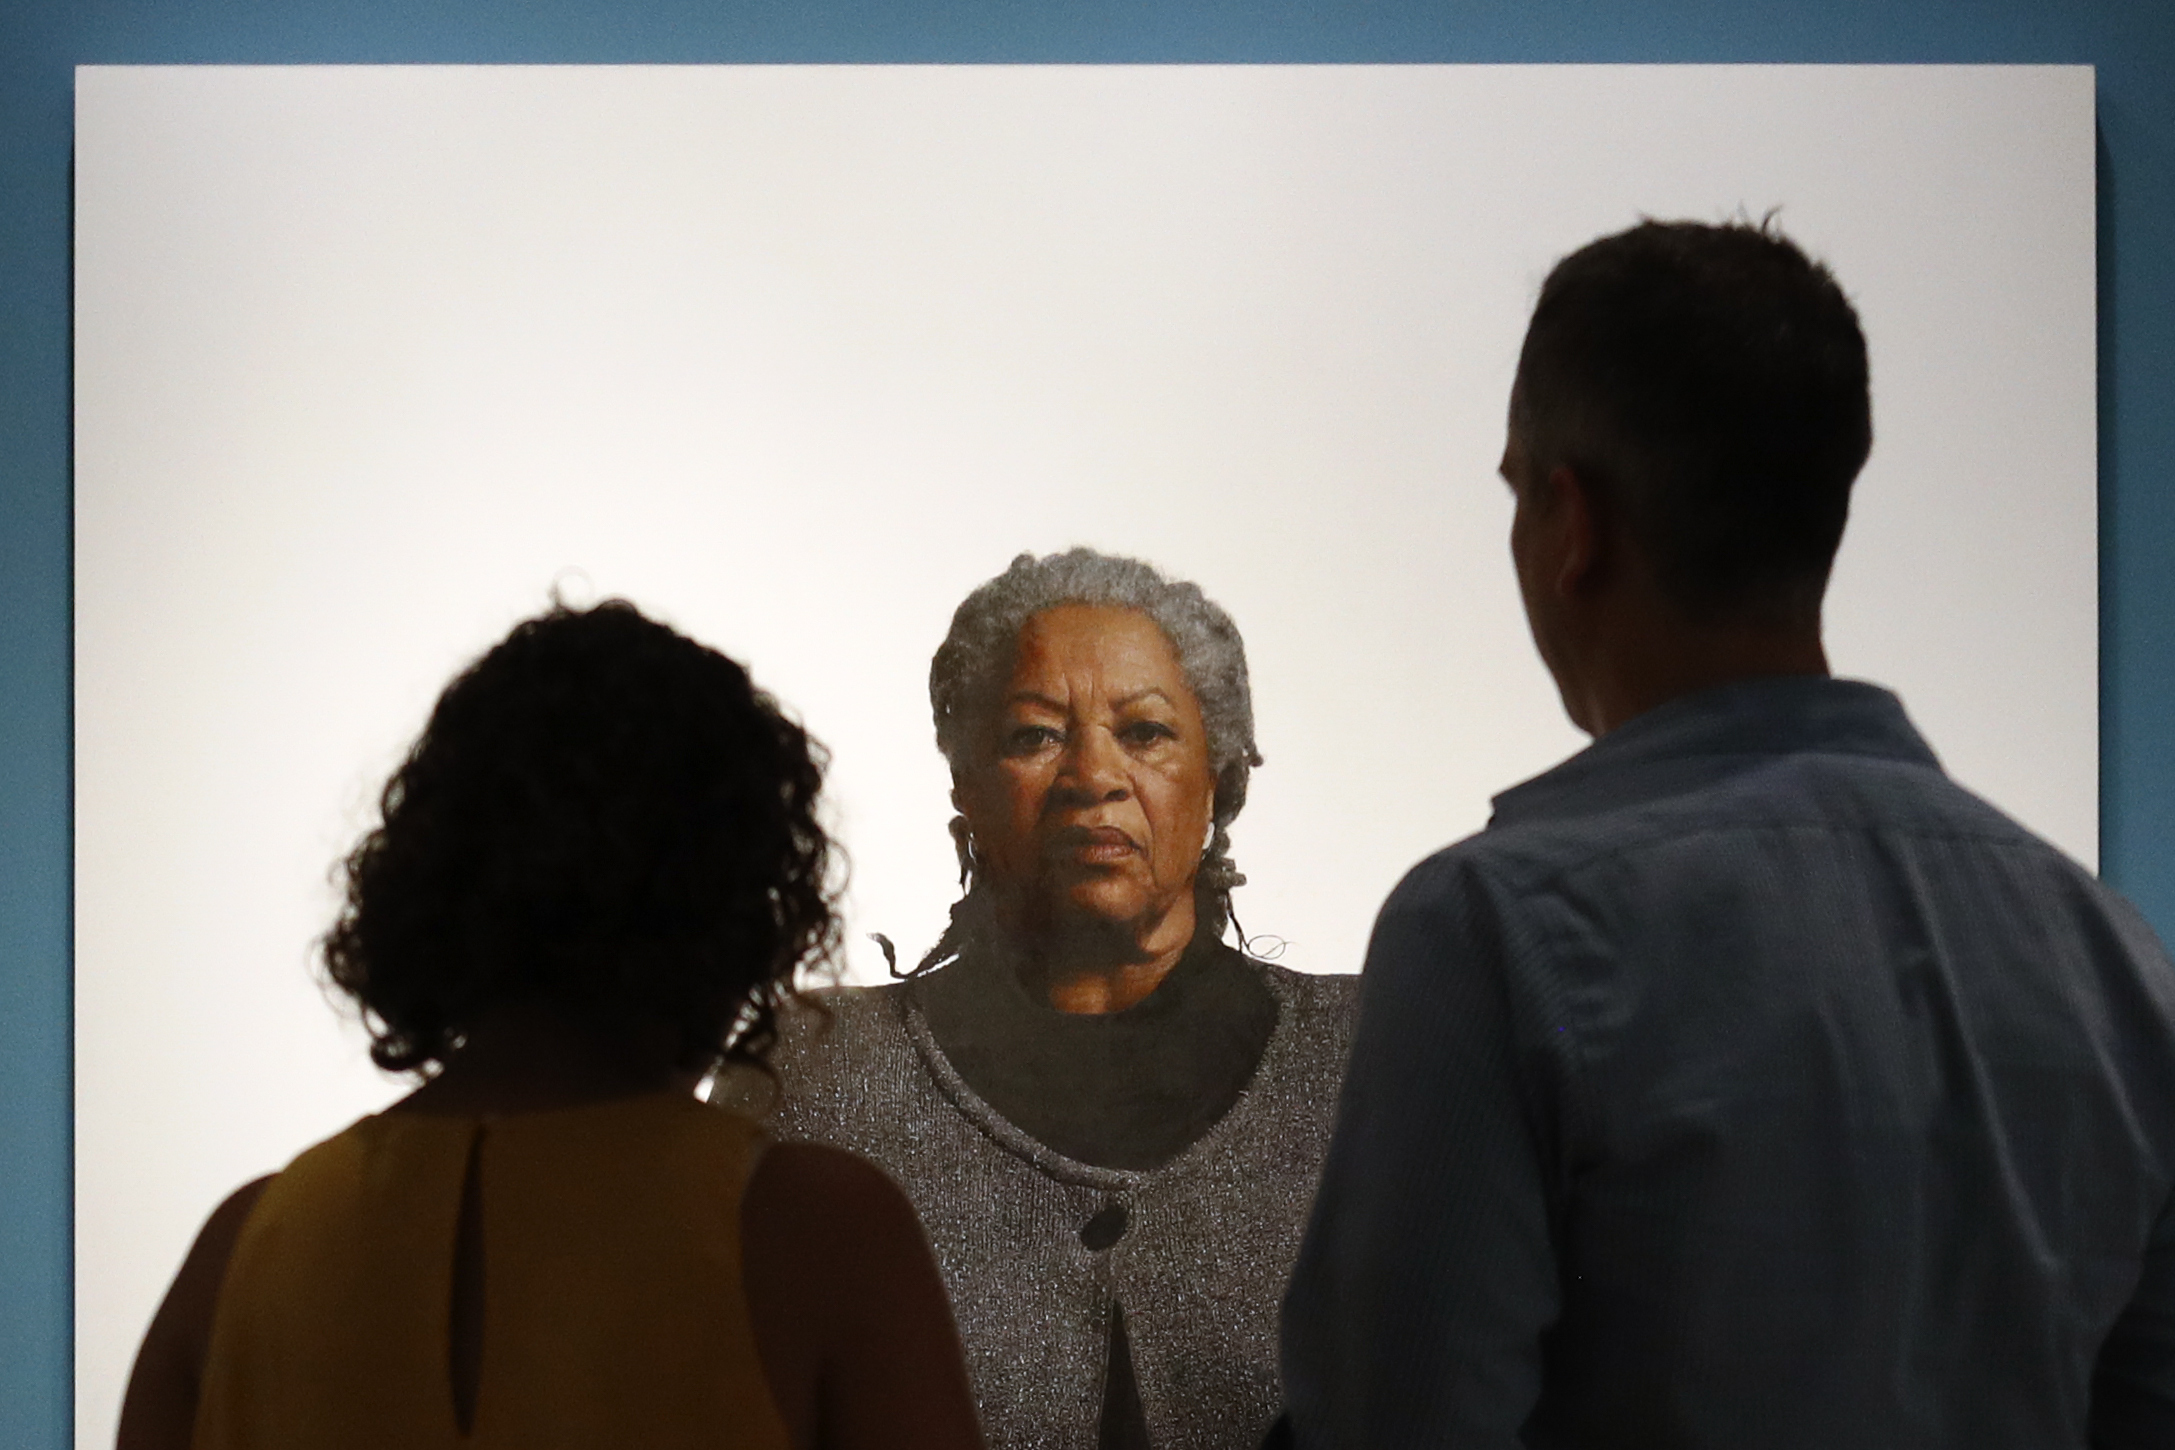 Visitors view a portrait of Nobel laureate Toni Morrison